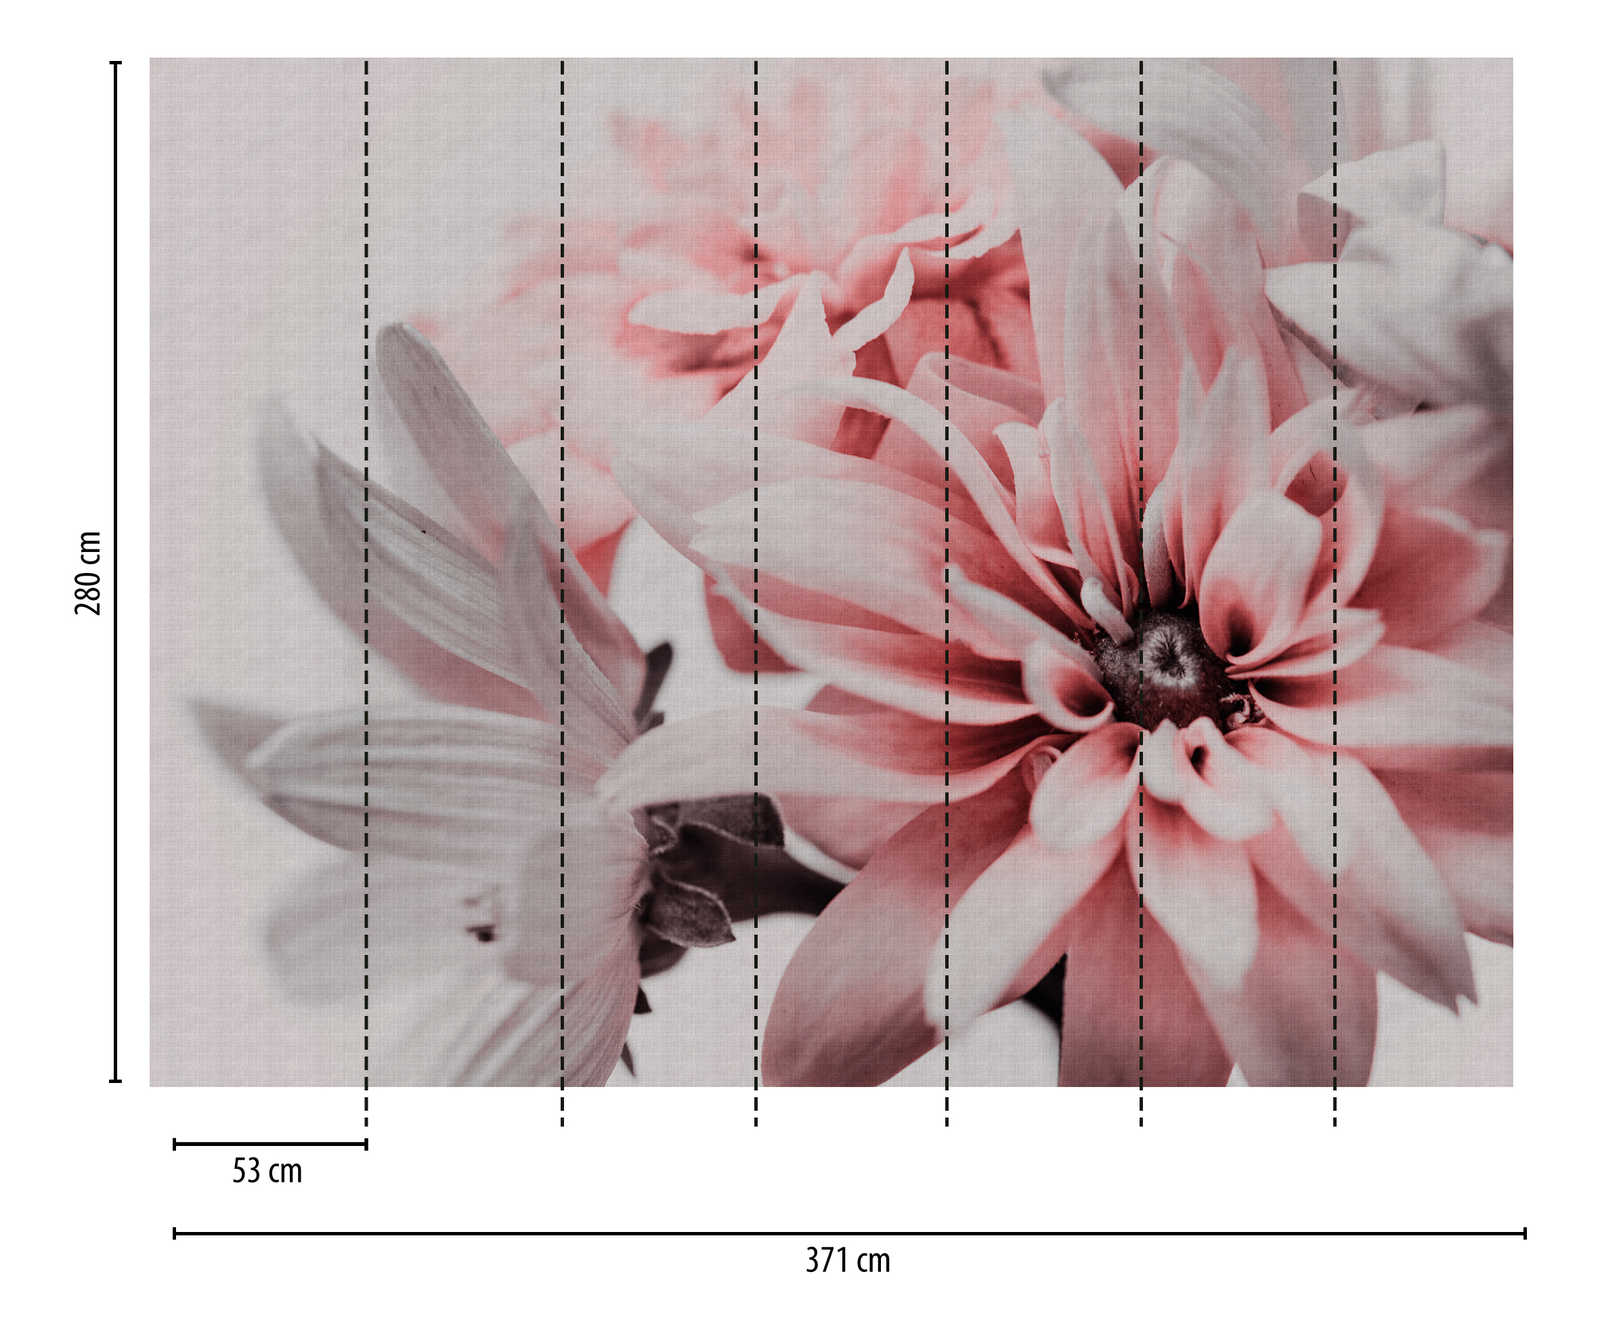             behang nieuwigheid | motief behang bloemen, XXL madeliefjes zacht roze
        